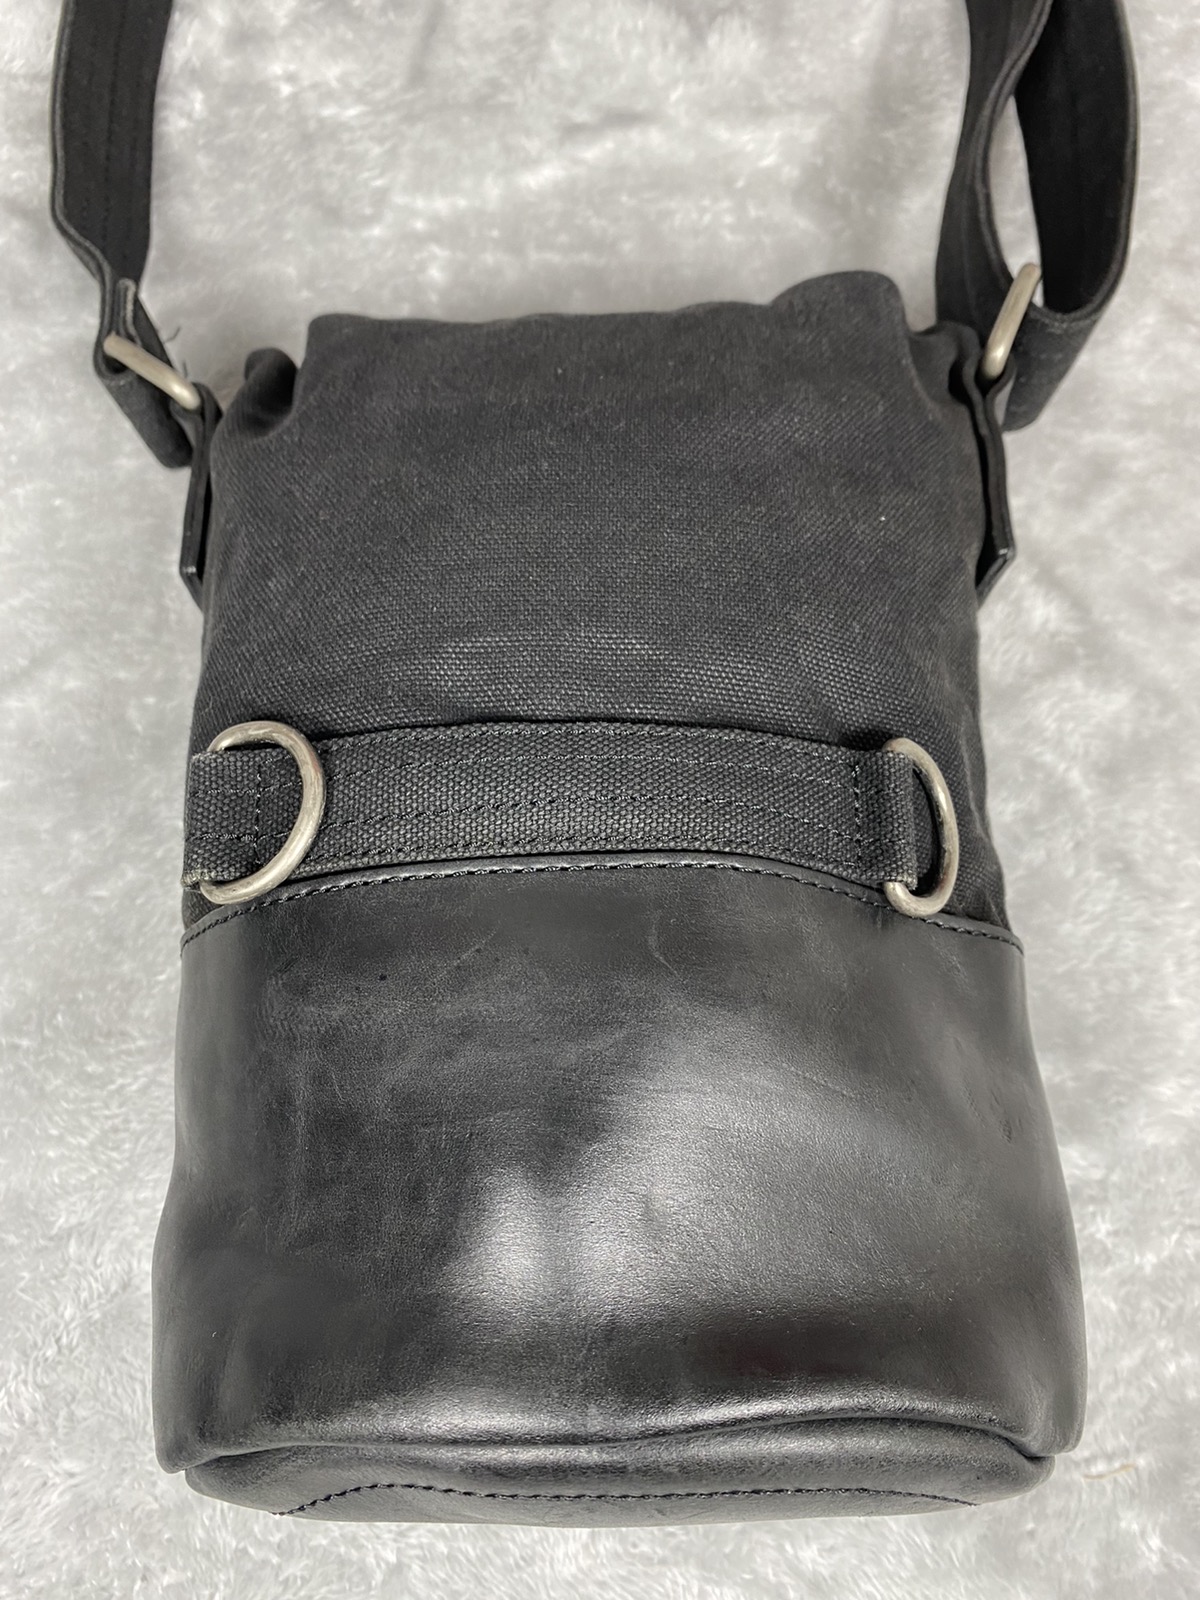 Dries Van Noten Shoulder/Cross body Leather Canvas Bag - 8